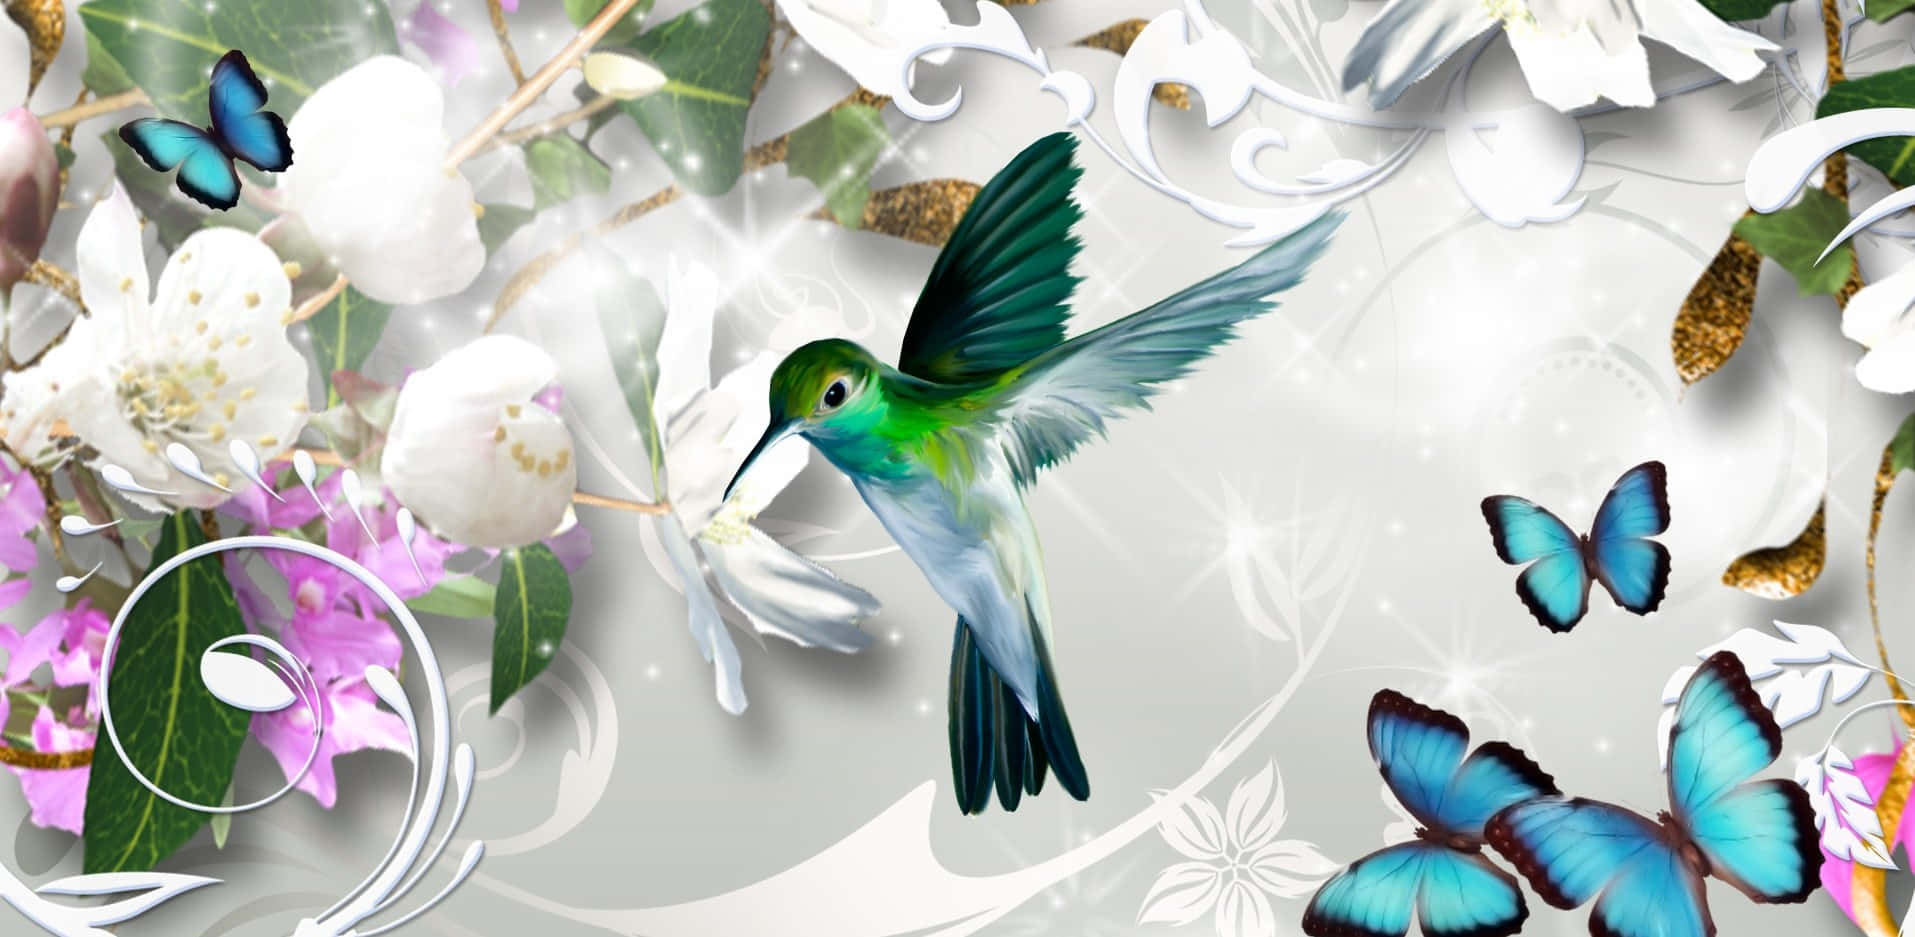 Einperuanischer Metallschwanzkolibri Mit Violettem Kehlfleck Sitzt Auf Einem Ast In Seinem Natürlichen Lebensraum.